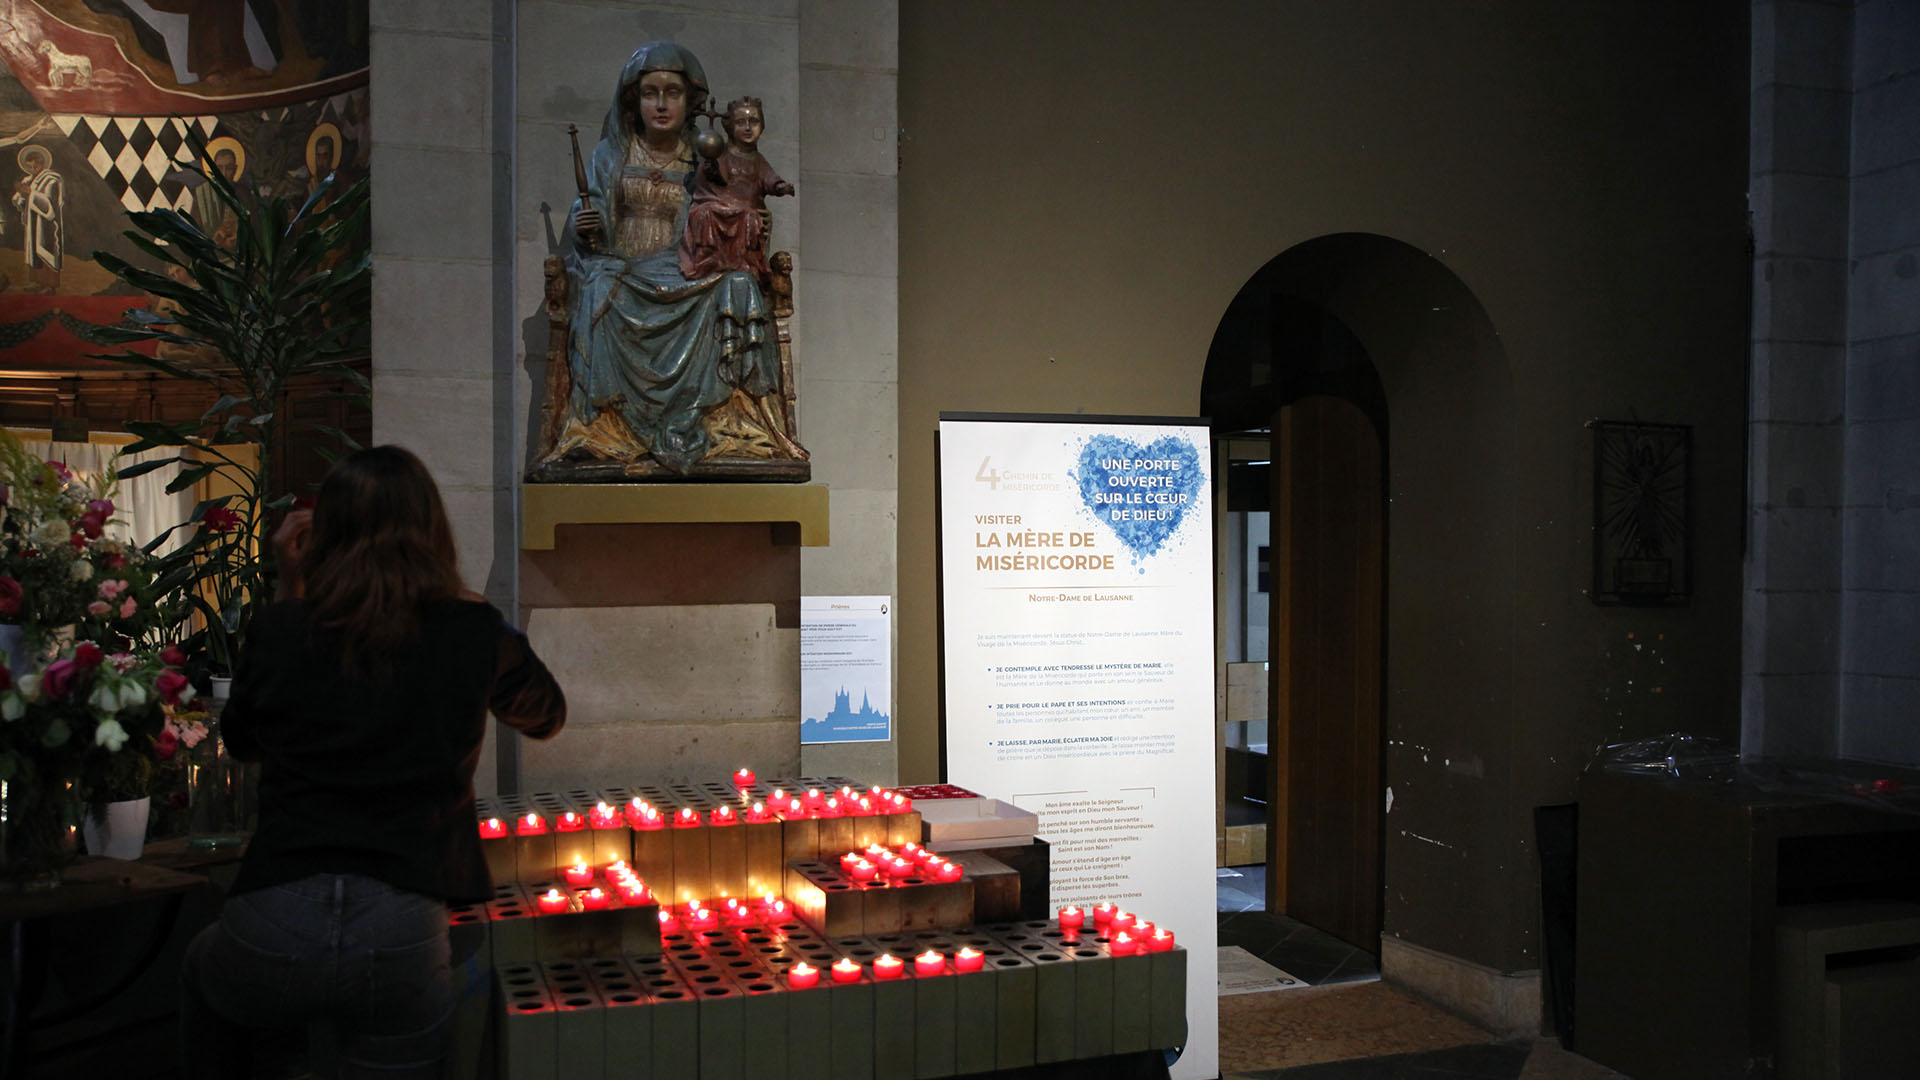 Lausanne le 18 août 2016. Chemin de la miséricorde à la basilique Notre-Dame de l'Assomption. Etape 4 consacrée à la Vierge Marie, la "Mère de miséricorde". (Photo: B. Hallet)